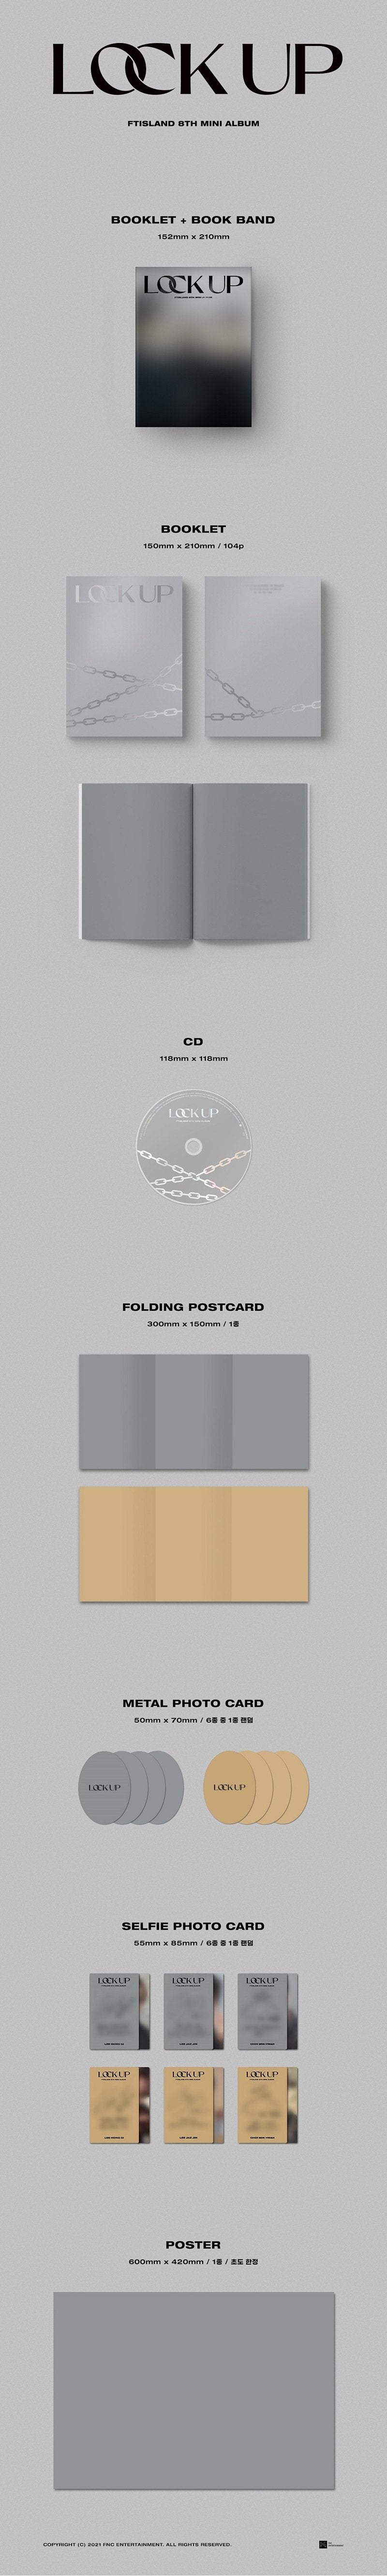 FTISLAND – LOCK UP (8. Mini-Album)